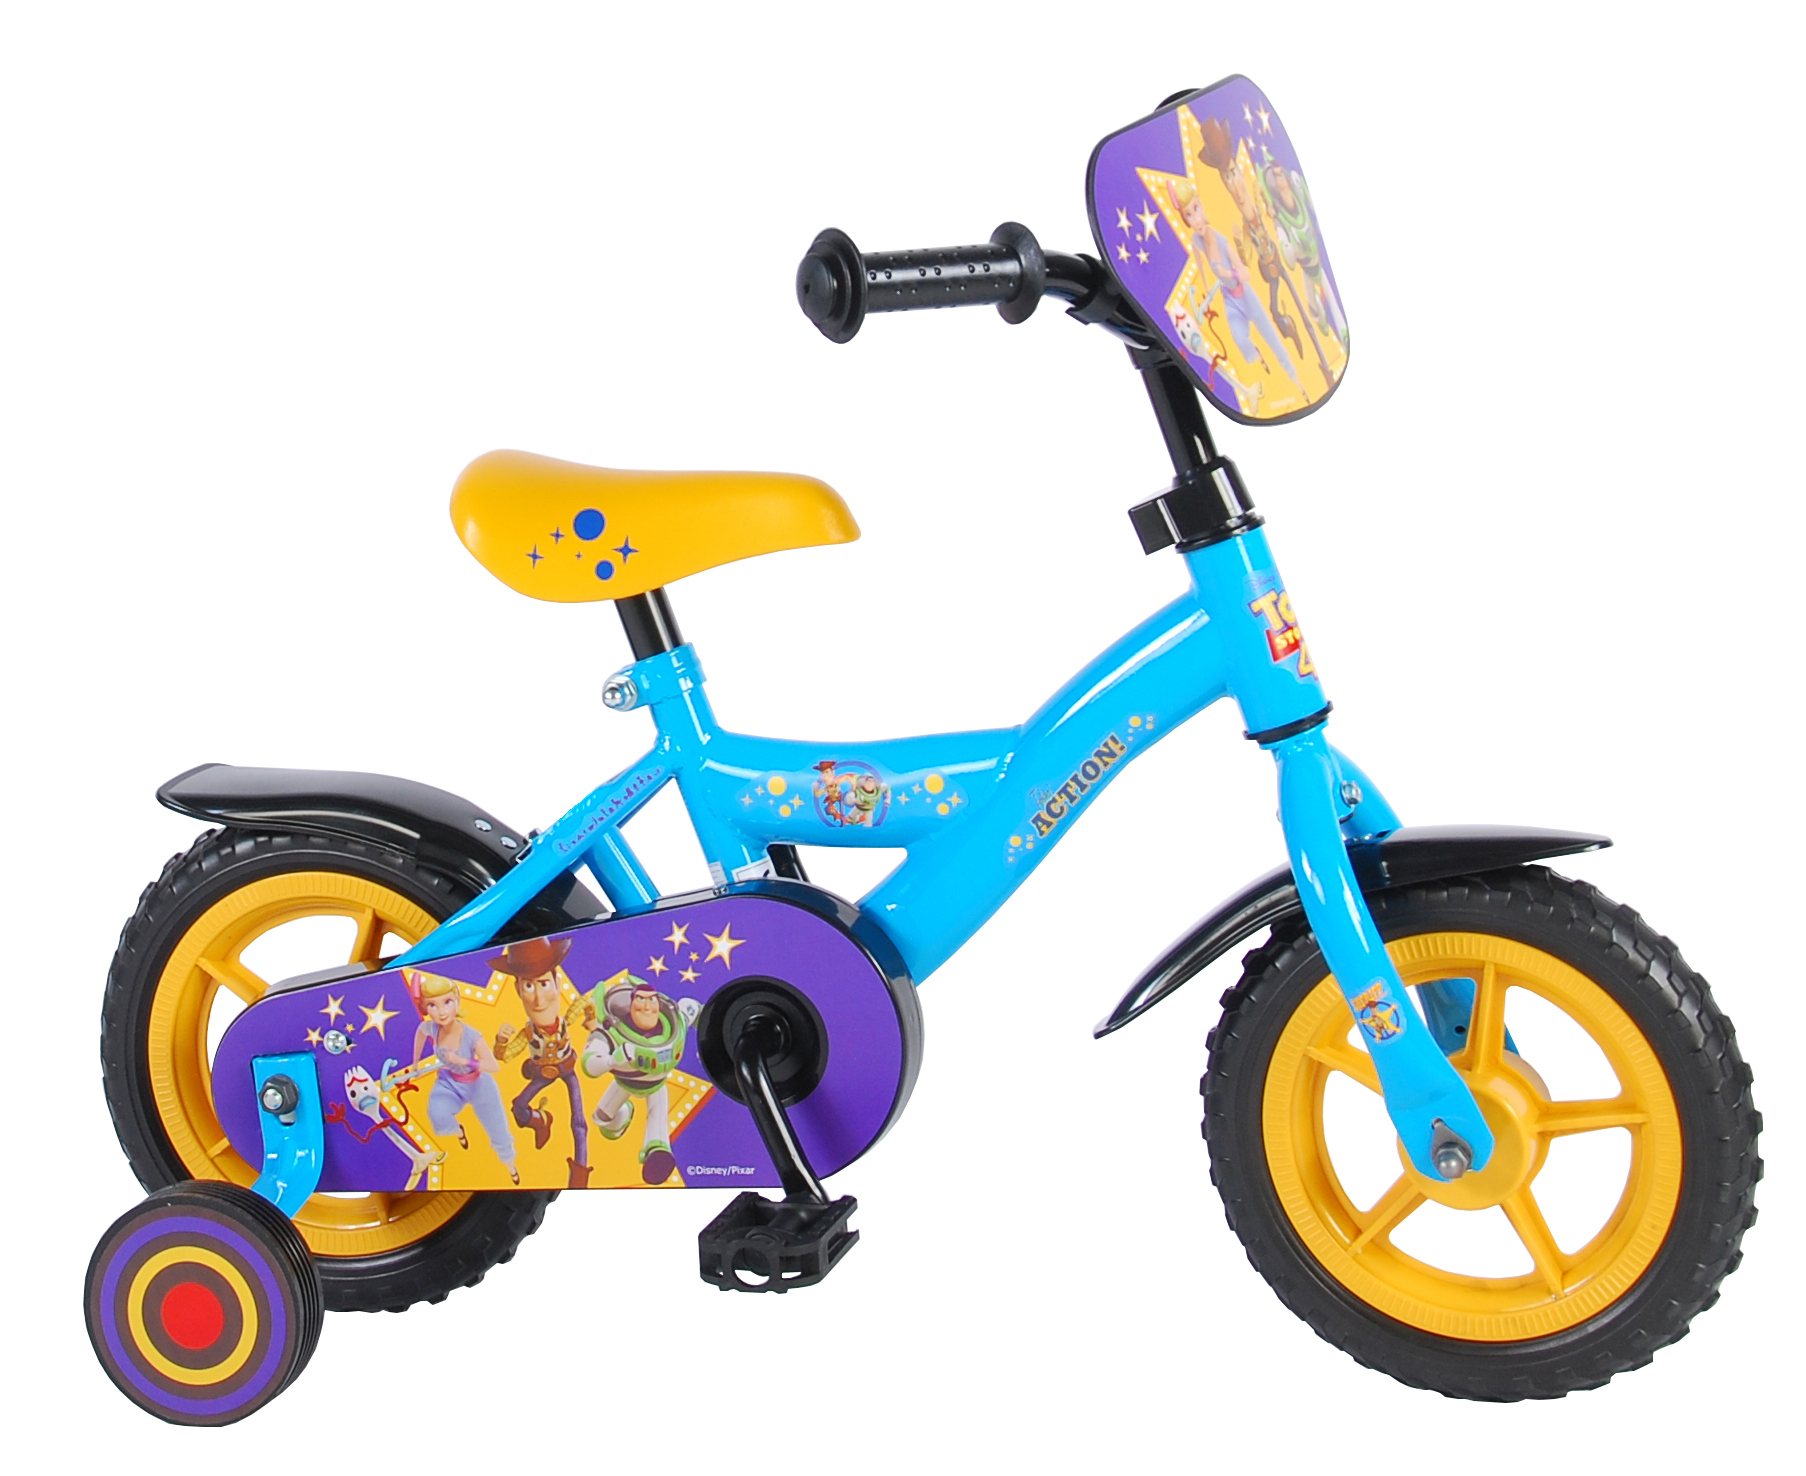 Sandy Riet Uitscheiden Toy Story Kinderfiets - Jongens - 10 inch - Blauw/Geel